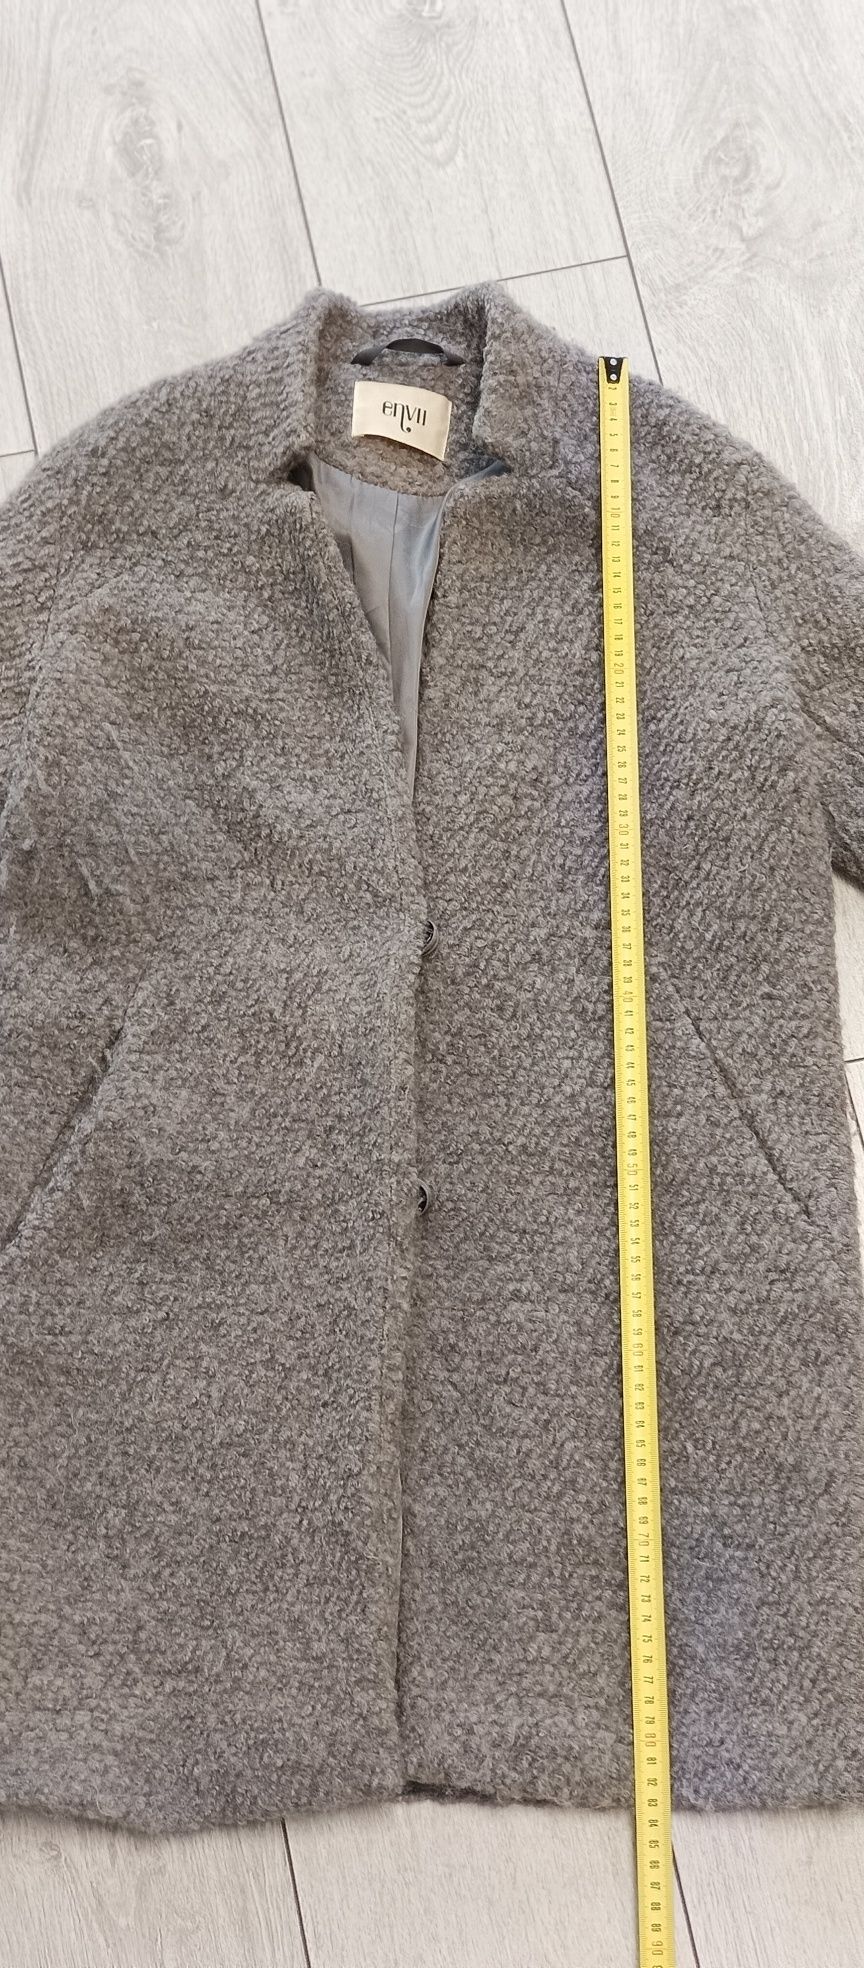 Жіноче сіре пальто Envii 42 розміру